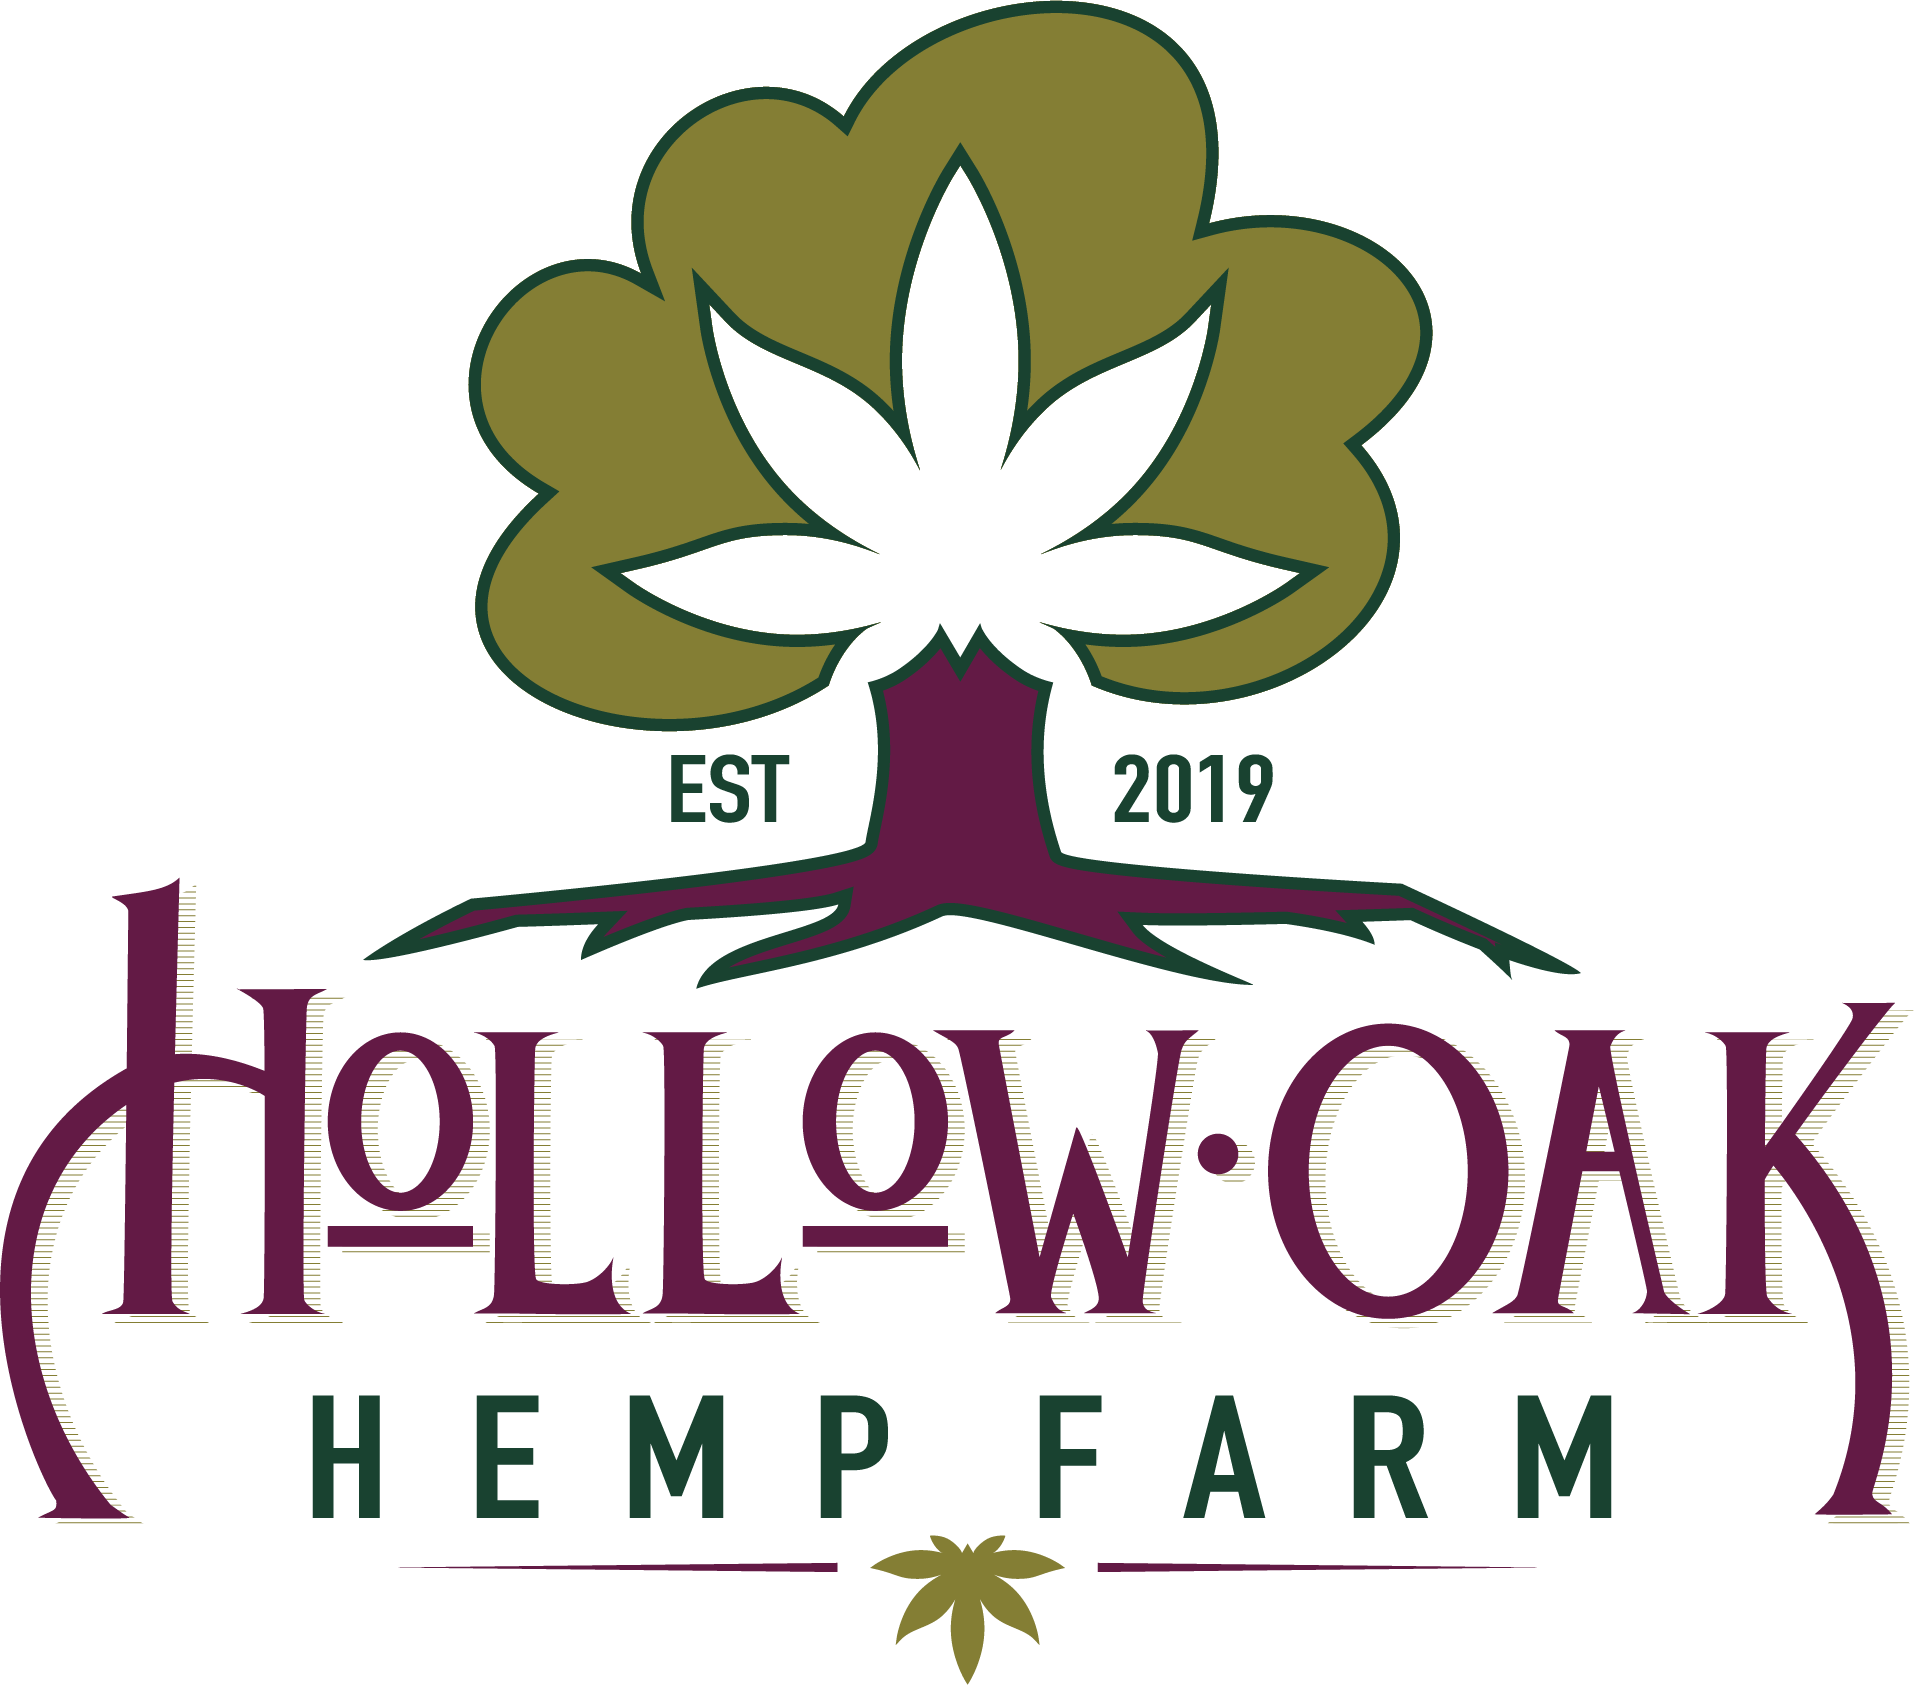 Hollow Oak Hemp Farm